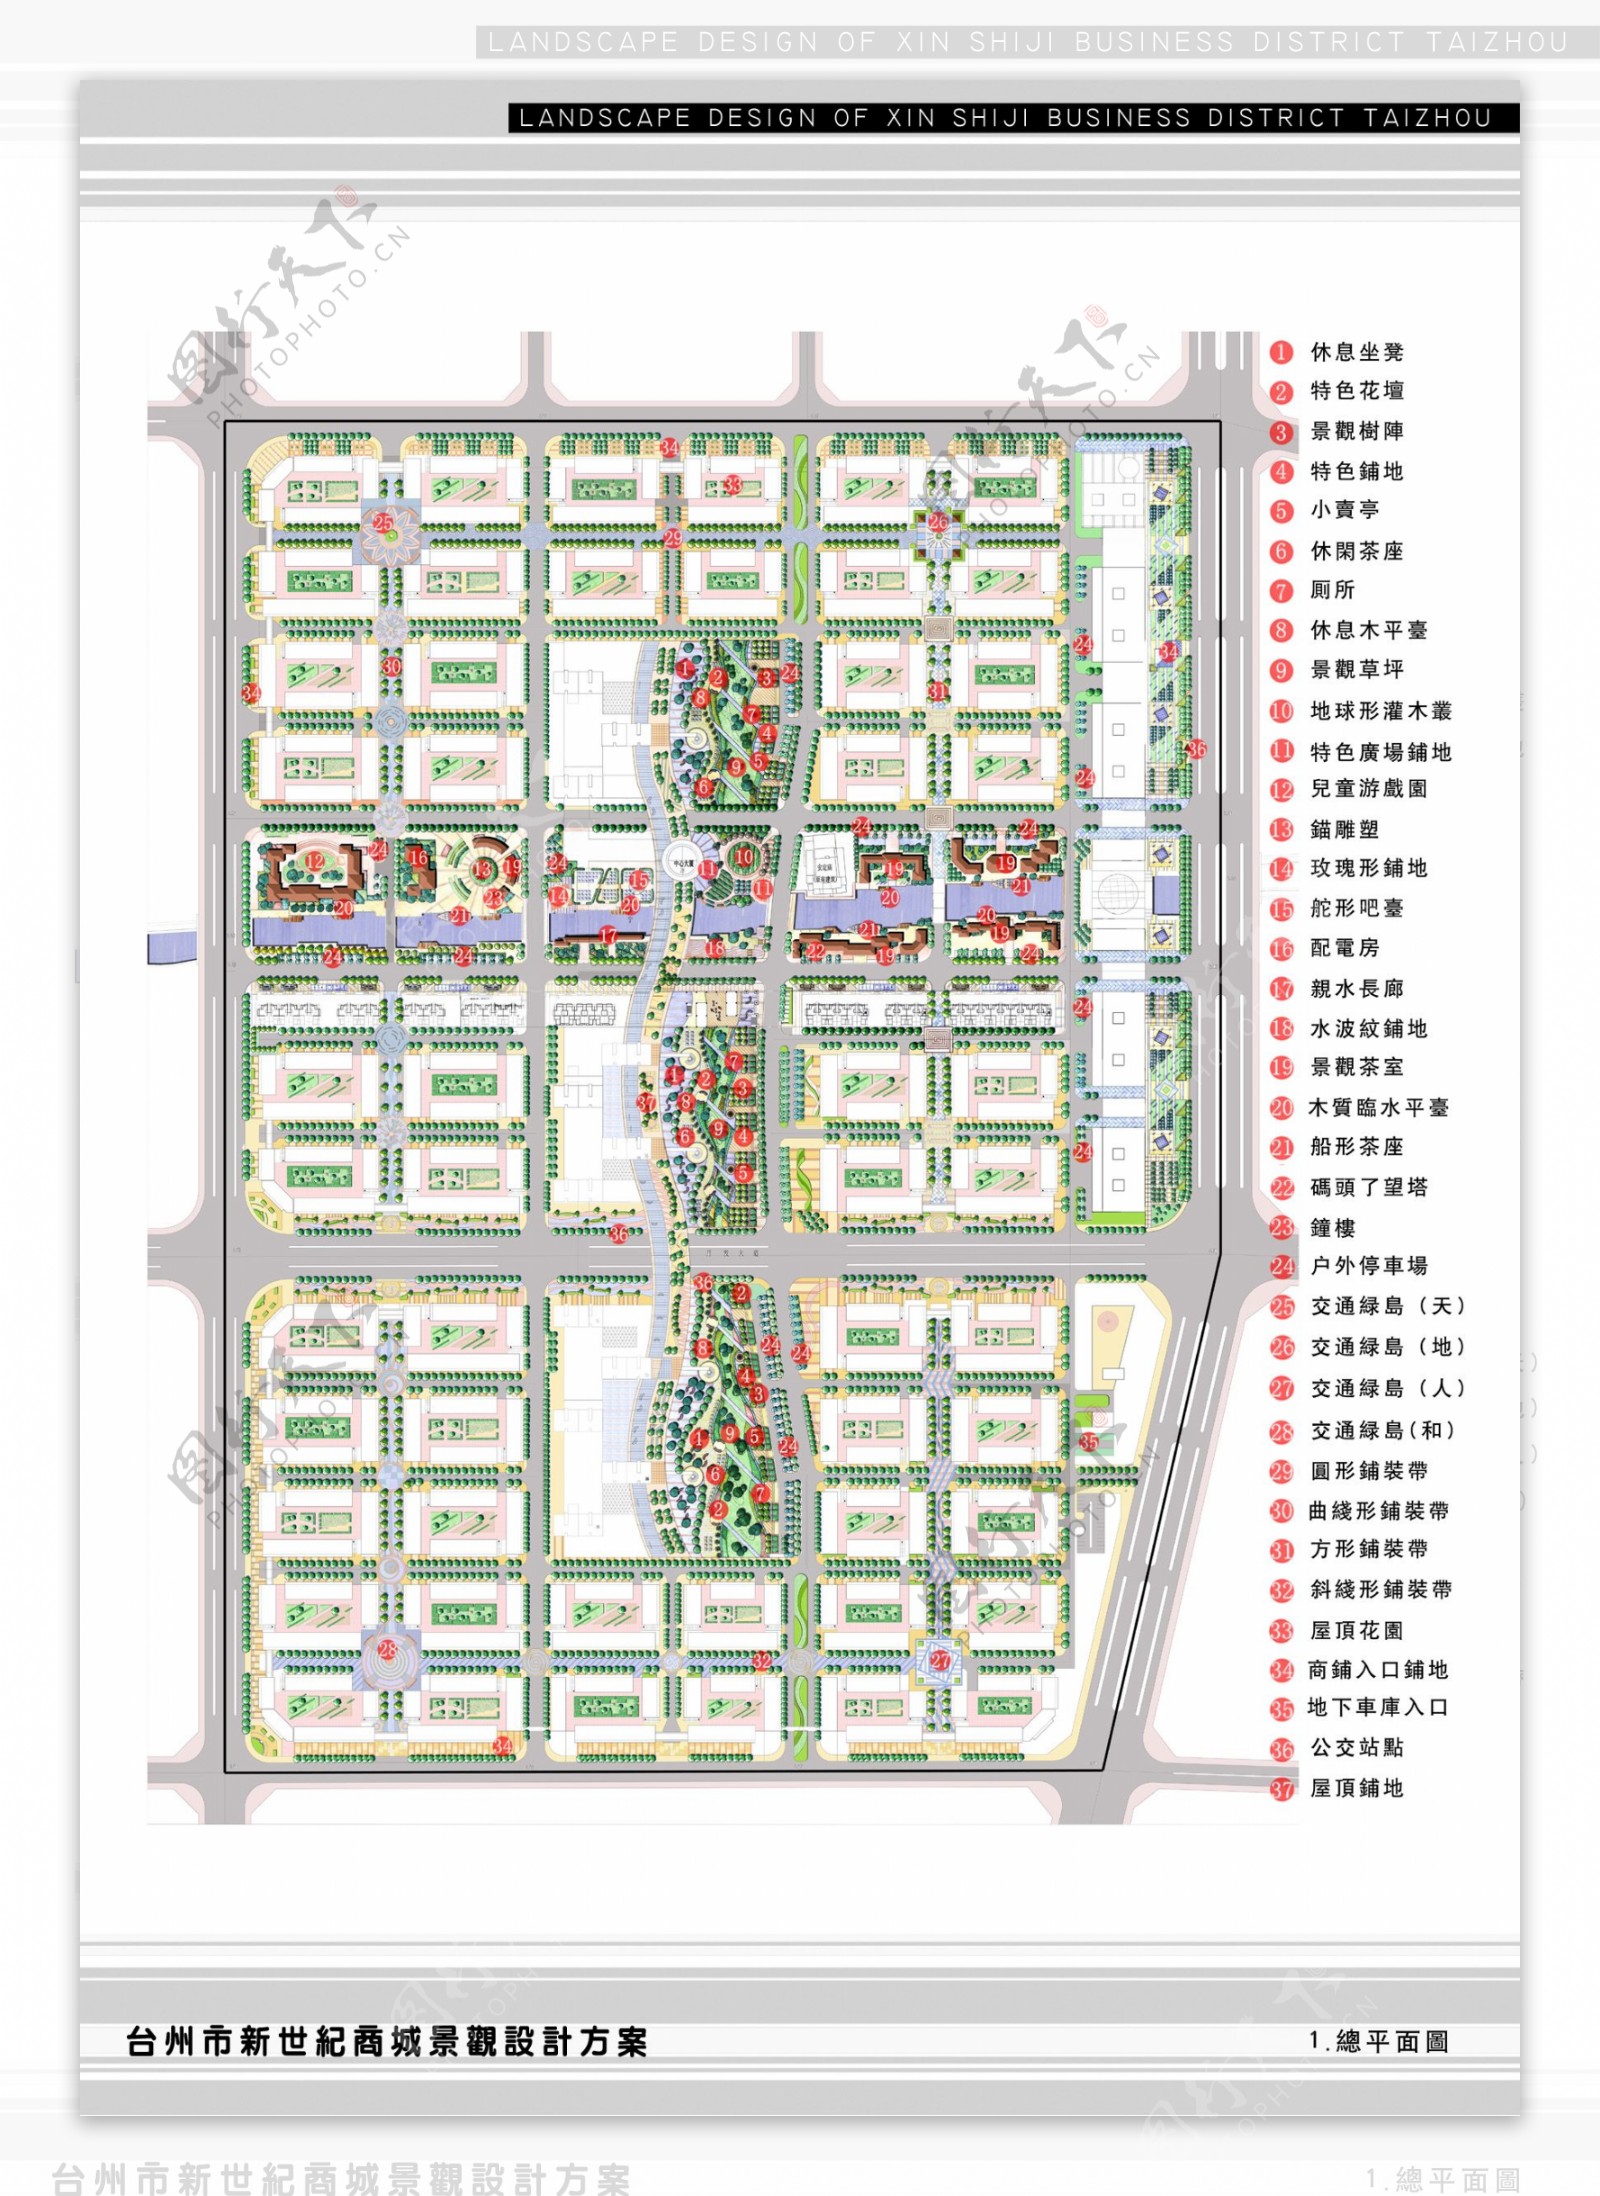 23.台州新世纪商城景观设计方案64.2MB